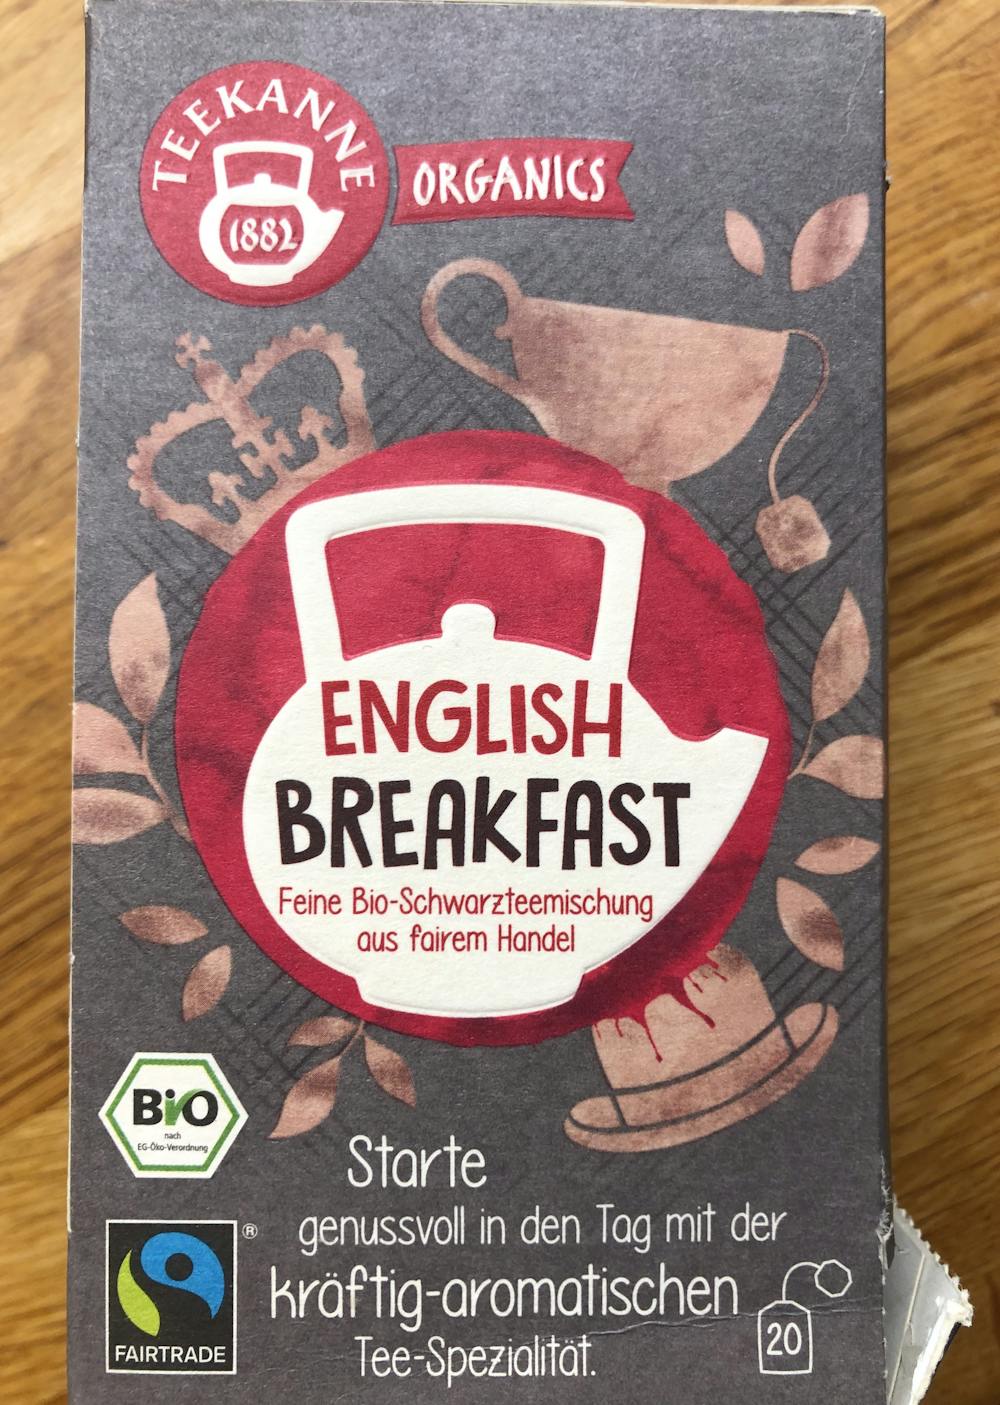 English breakfast, Tekanne